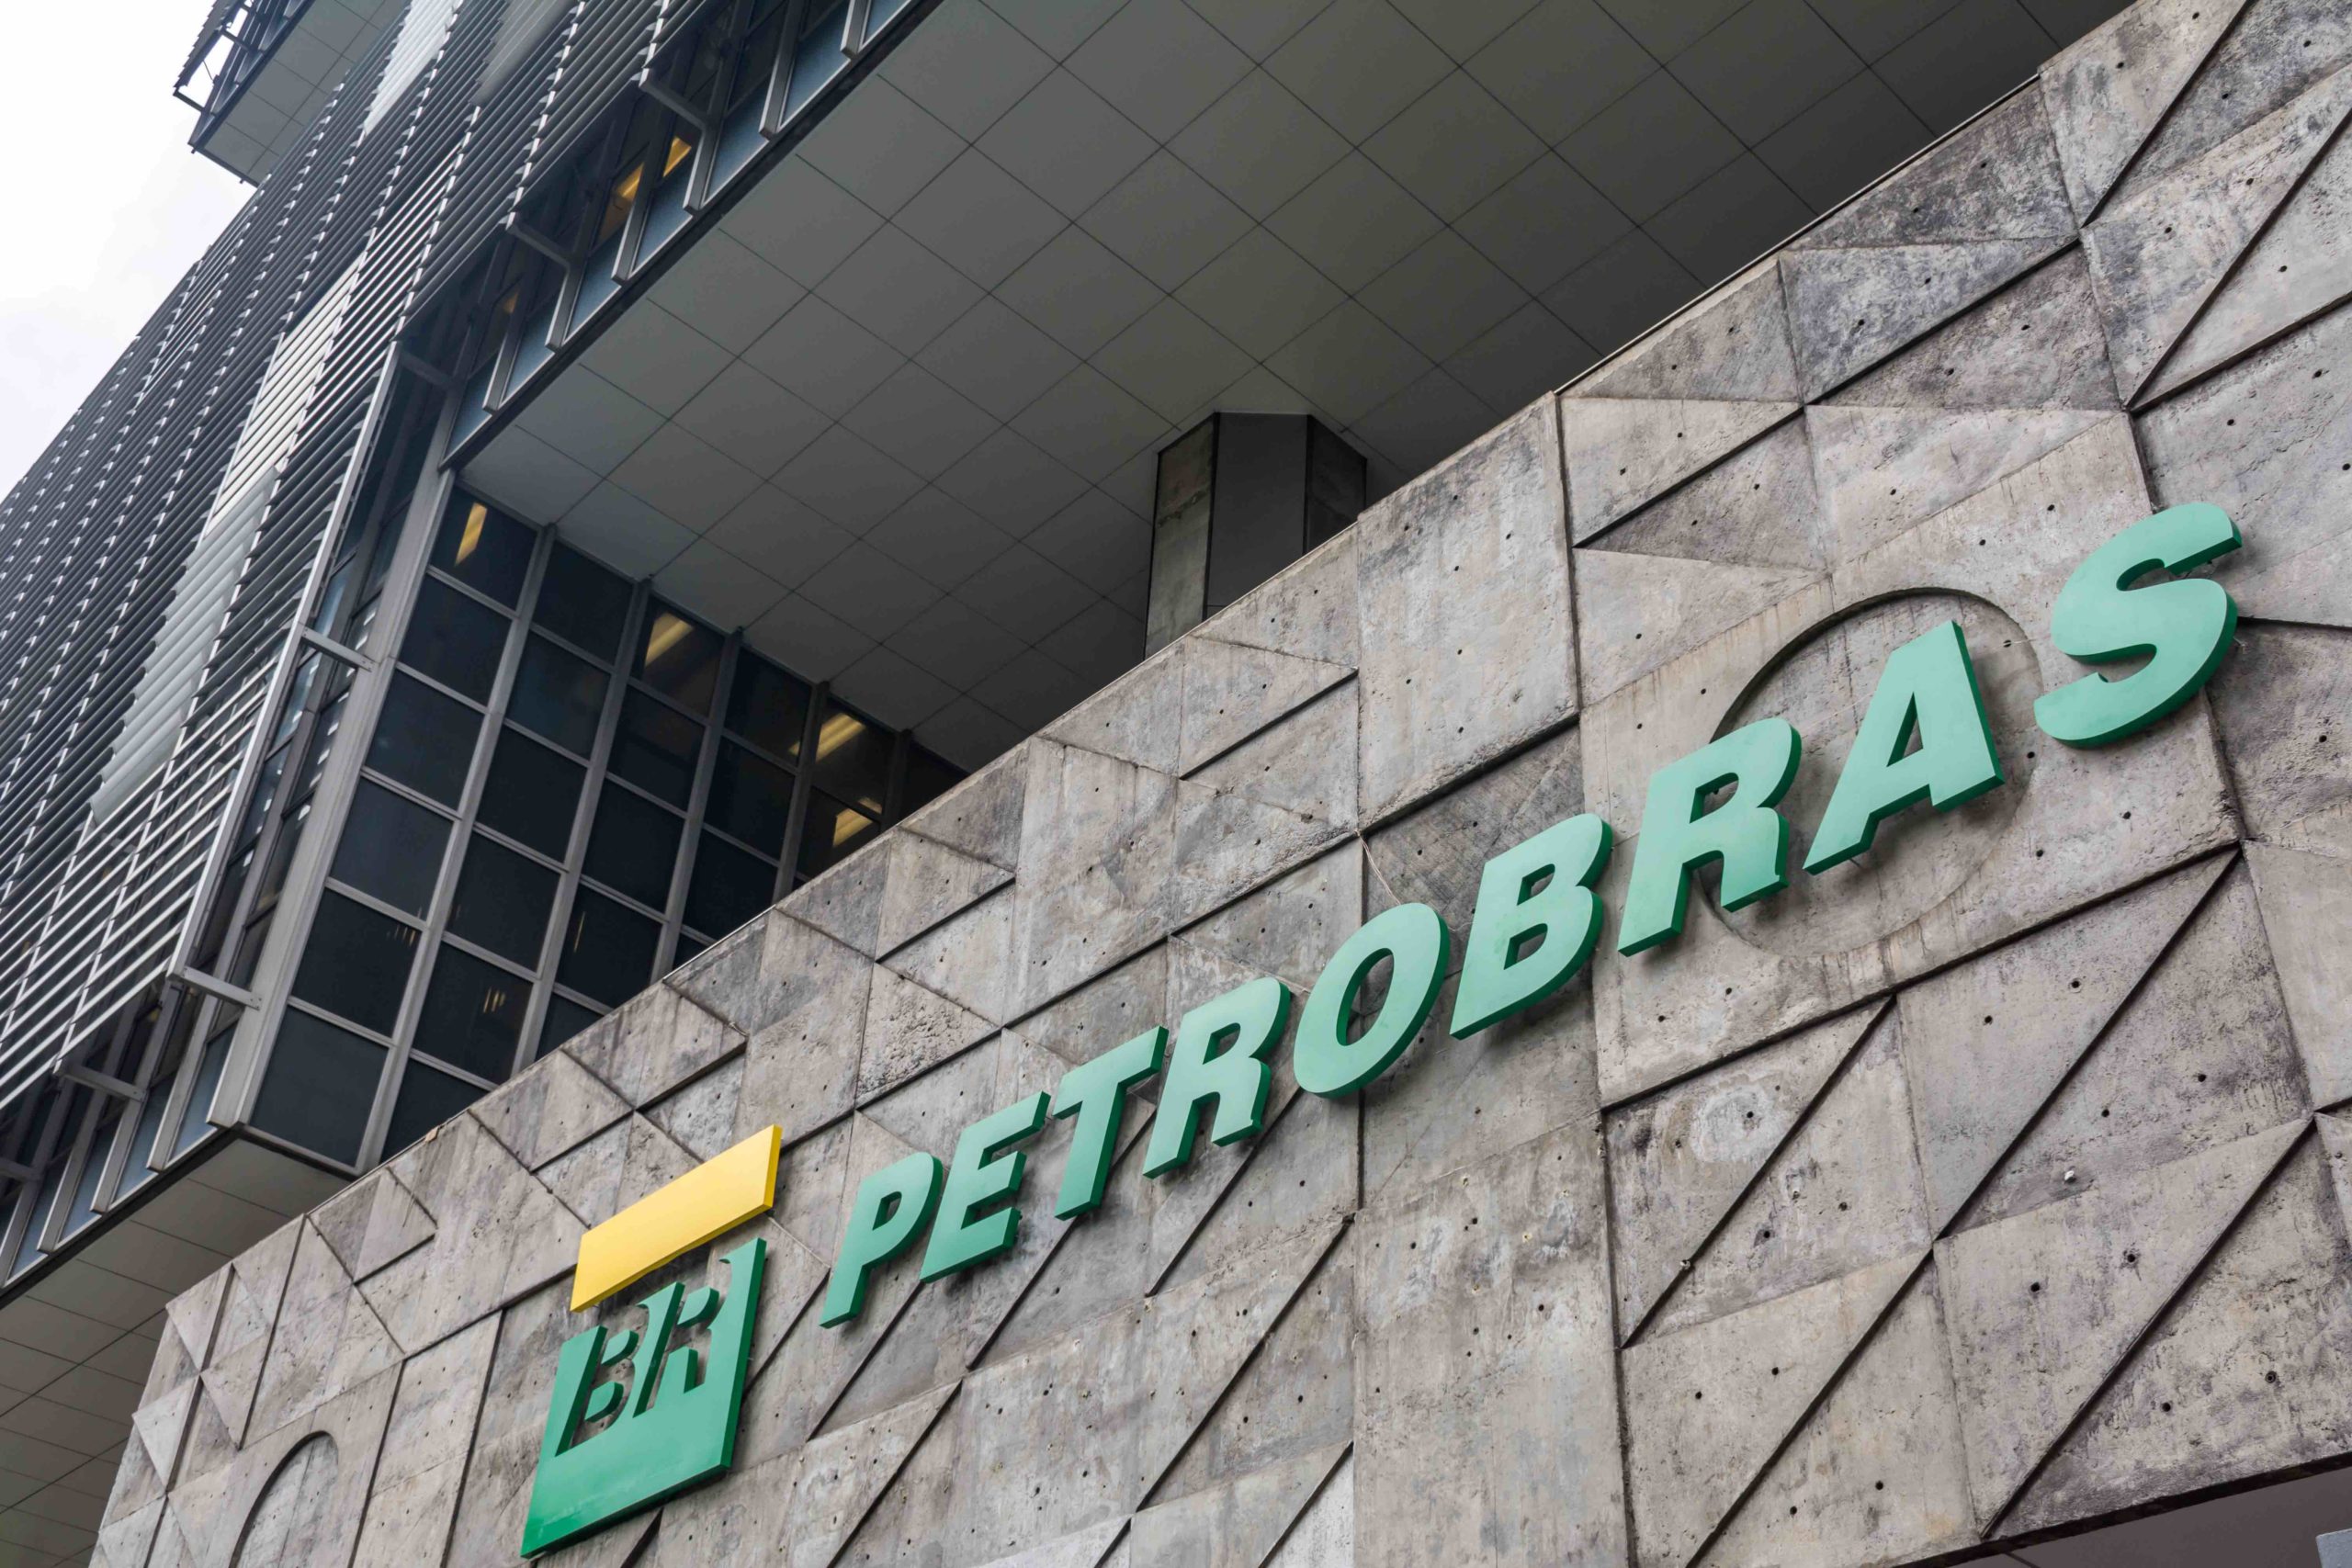 Petrobras perde R$ 32 bilhões em valor de mercado após mudanças no Estatuto Social. Na imagem: Fachada da sede da Petrobras (Edise), no centro do Rio de Janeiro (Foto: André Motta de Souza/Agência Petrobras)